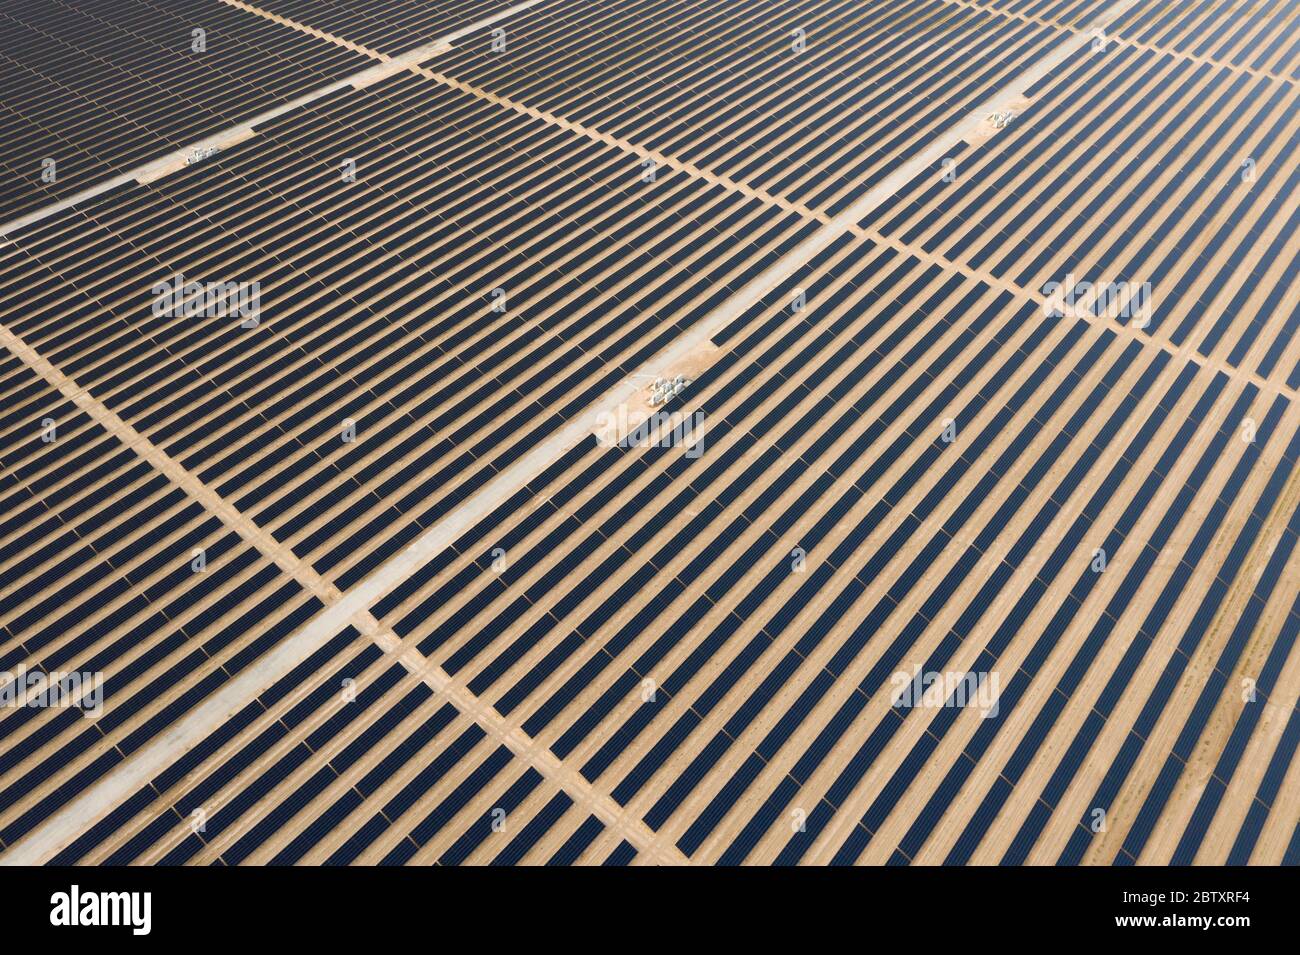 Vue aérienne d'un panneau solaire photovoltaïque et de transformateurs générant une énergie renouvelable durable dans une centrale électrique désertique. Banque D'Images